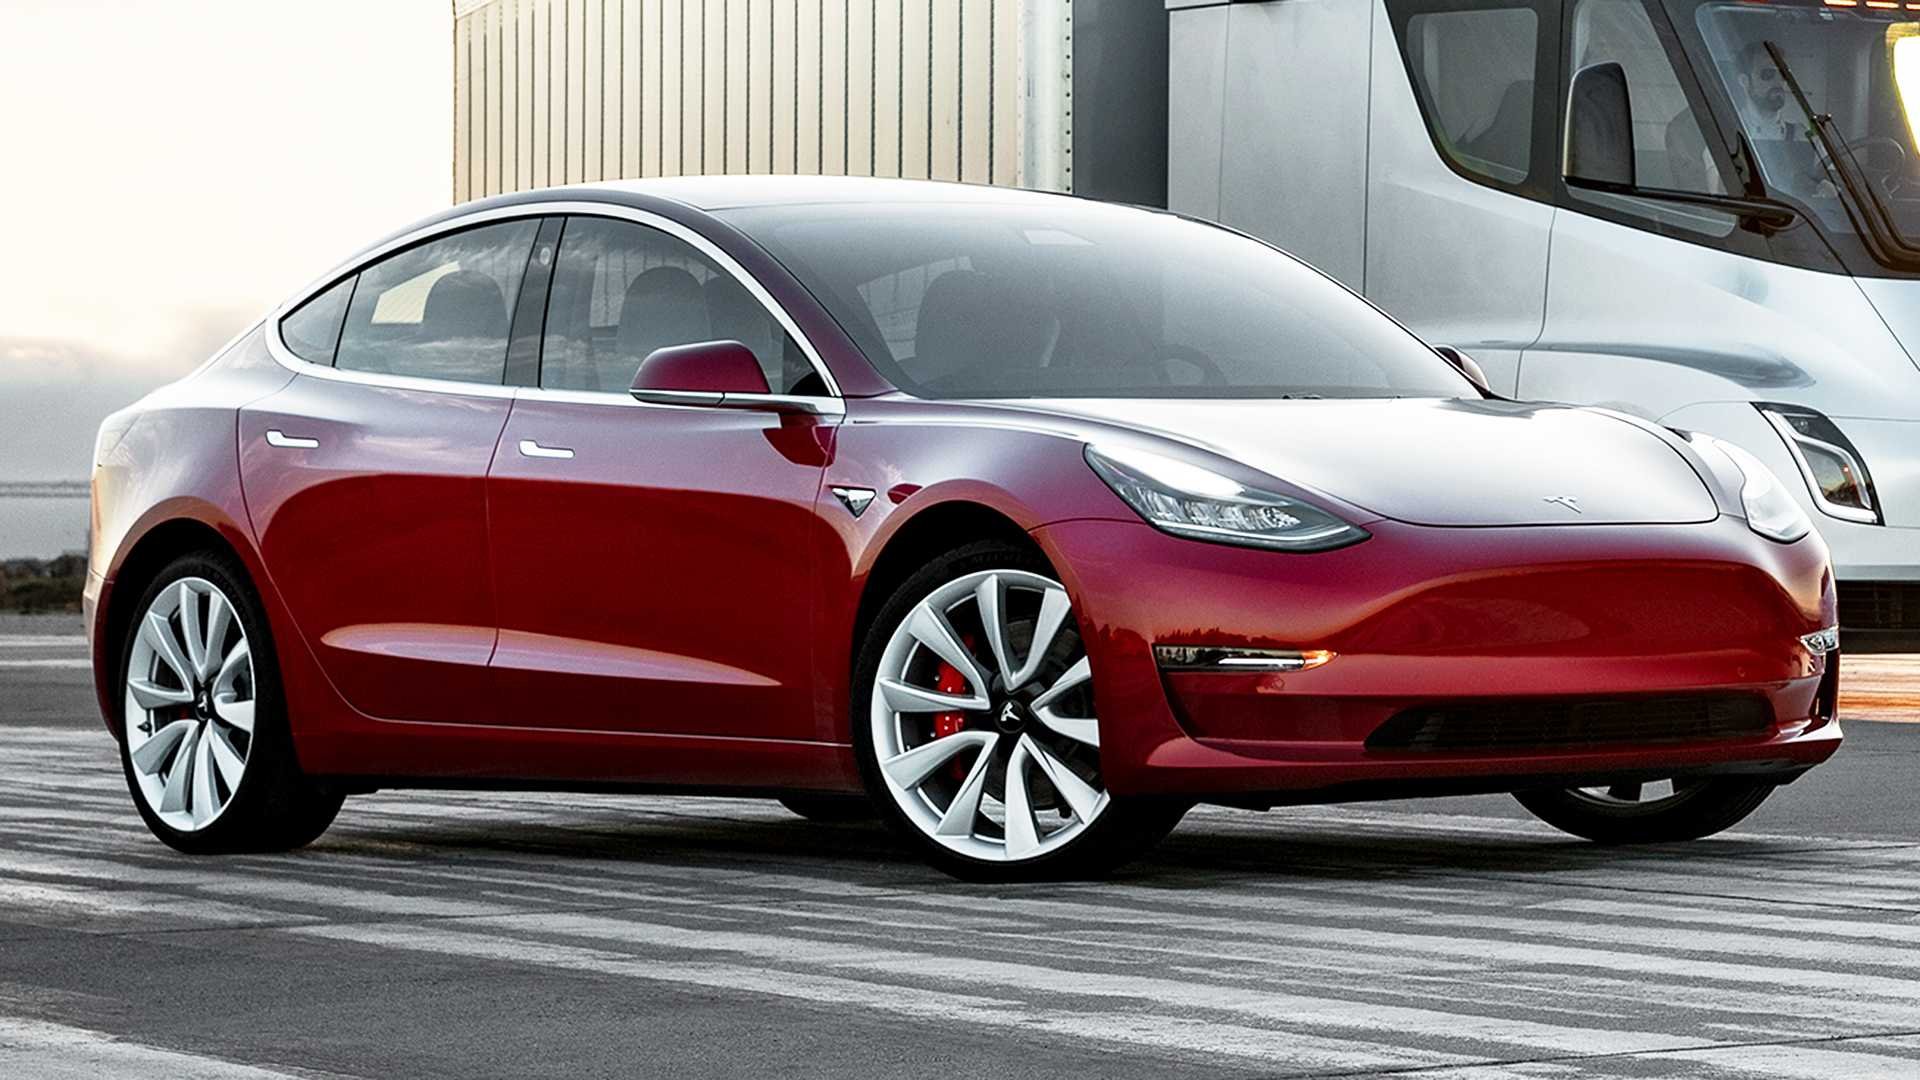 Tesla model 3 range